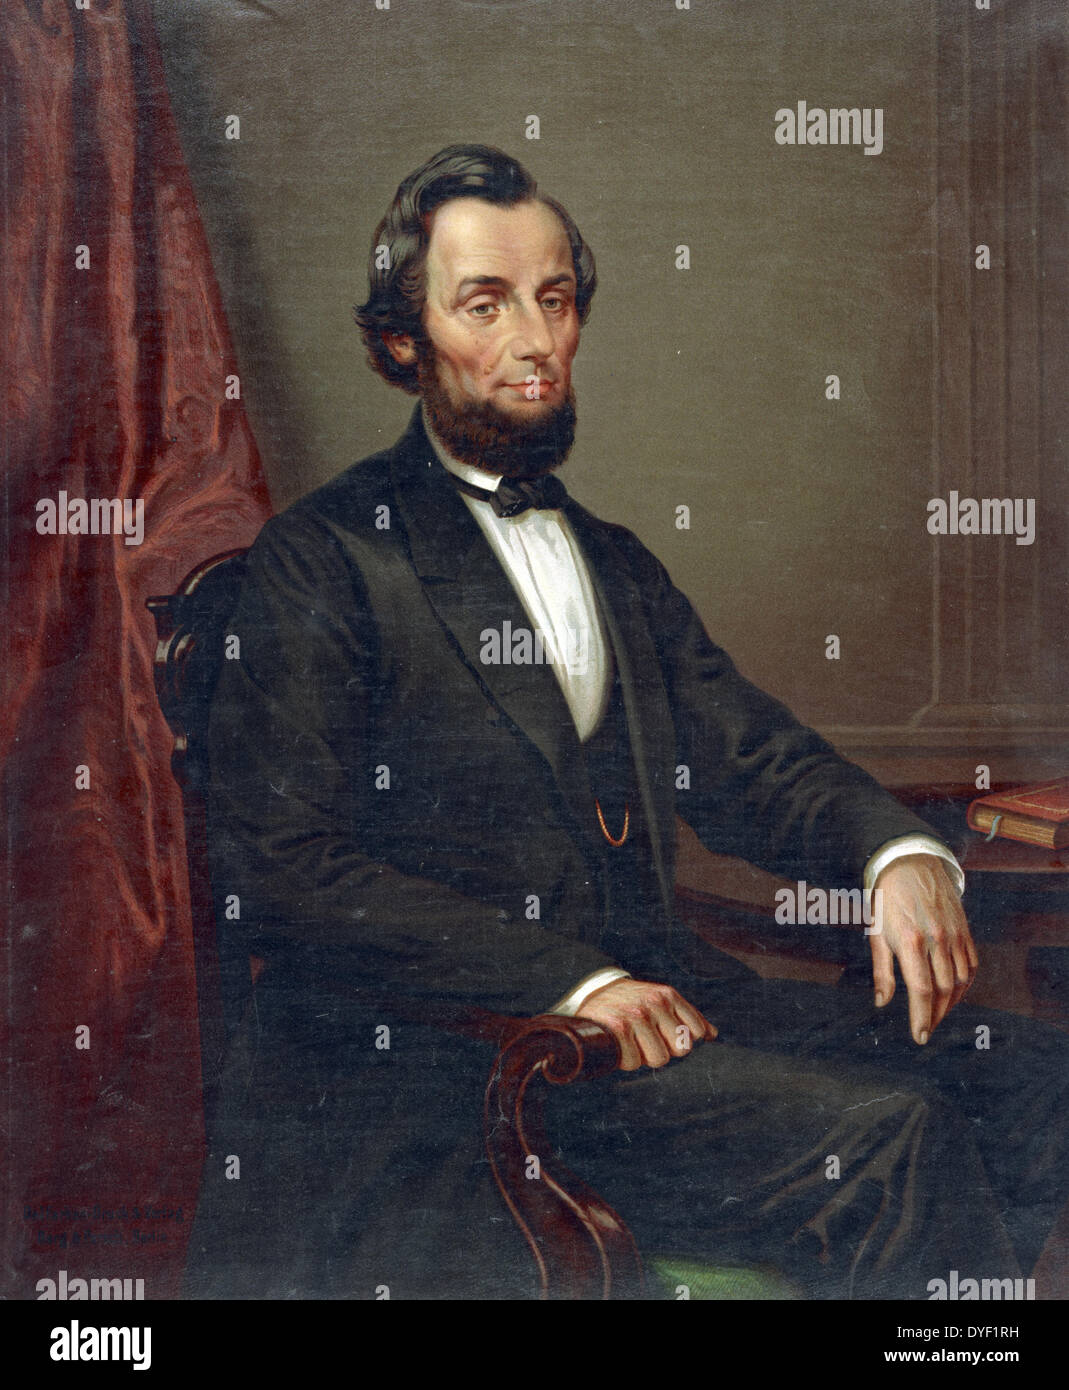 Abraham Lincoln 1809-1865. Sedicesimo Presidente degli Stati Uniti, che serve da marzo 1861 fino al suo assassinio nel mese di aprile 1865. Foto Stock